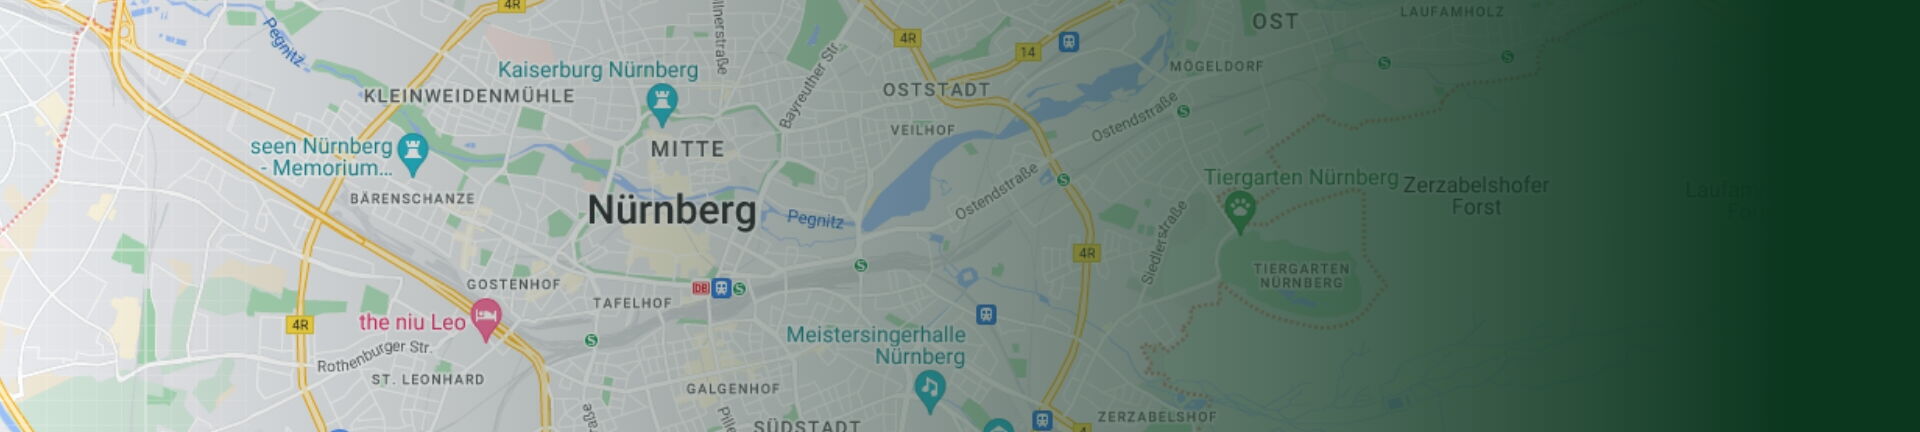 Ausschnitt der Landkarte der Stadt Nürnberg mit Stadtkern im Zentrum